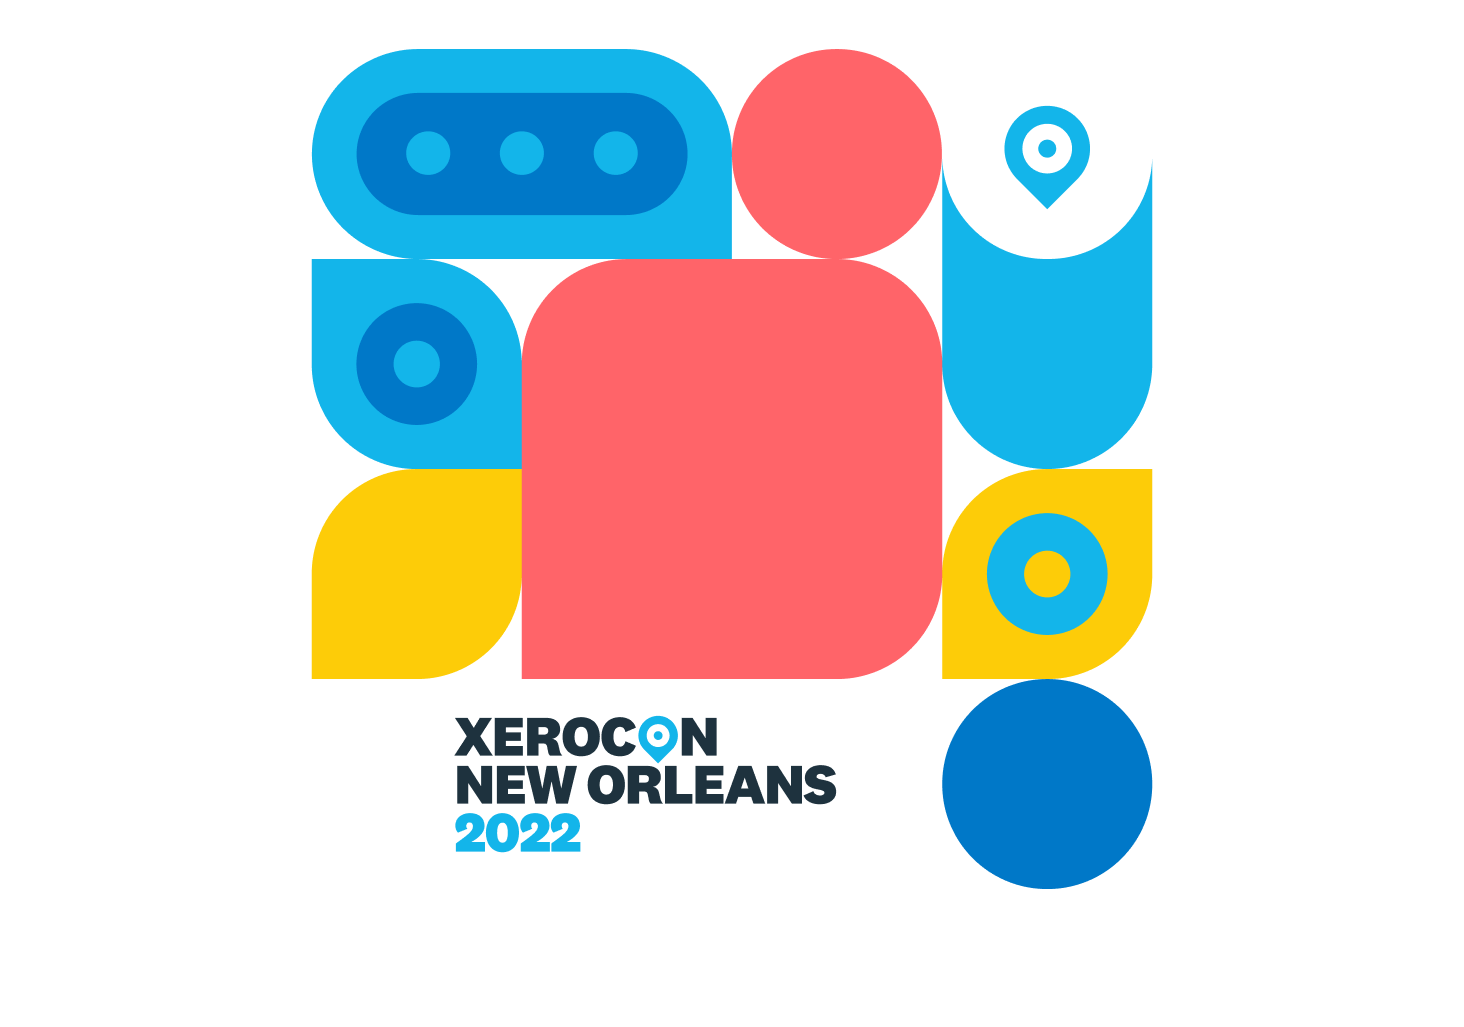 Xerocon 2022 logo